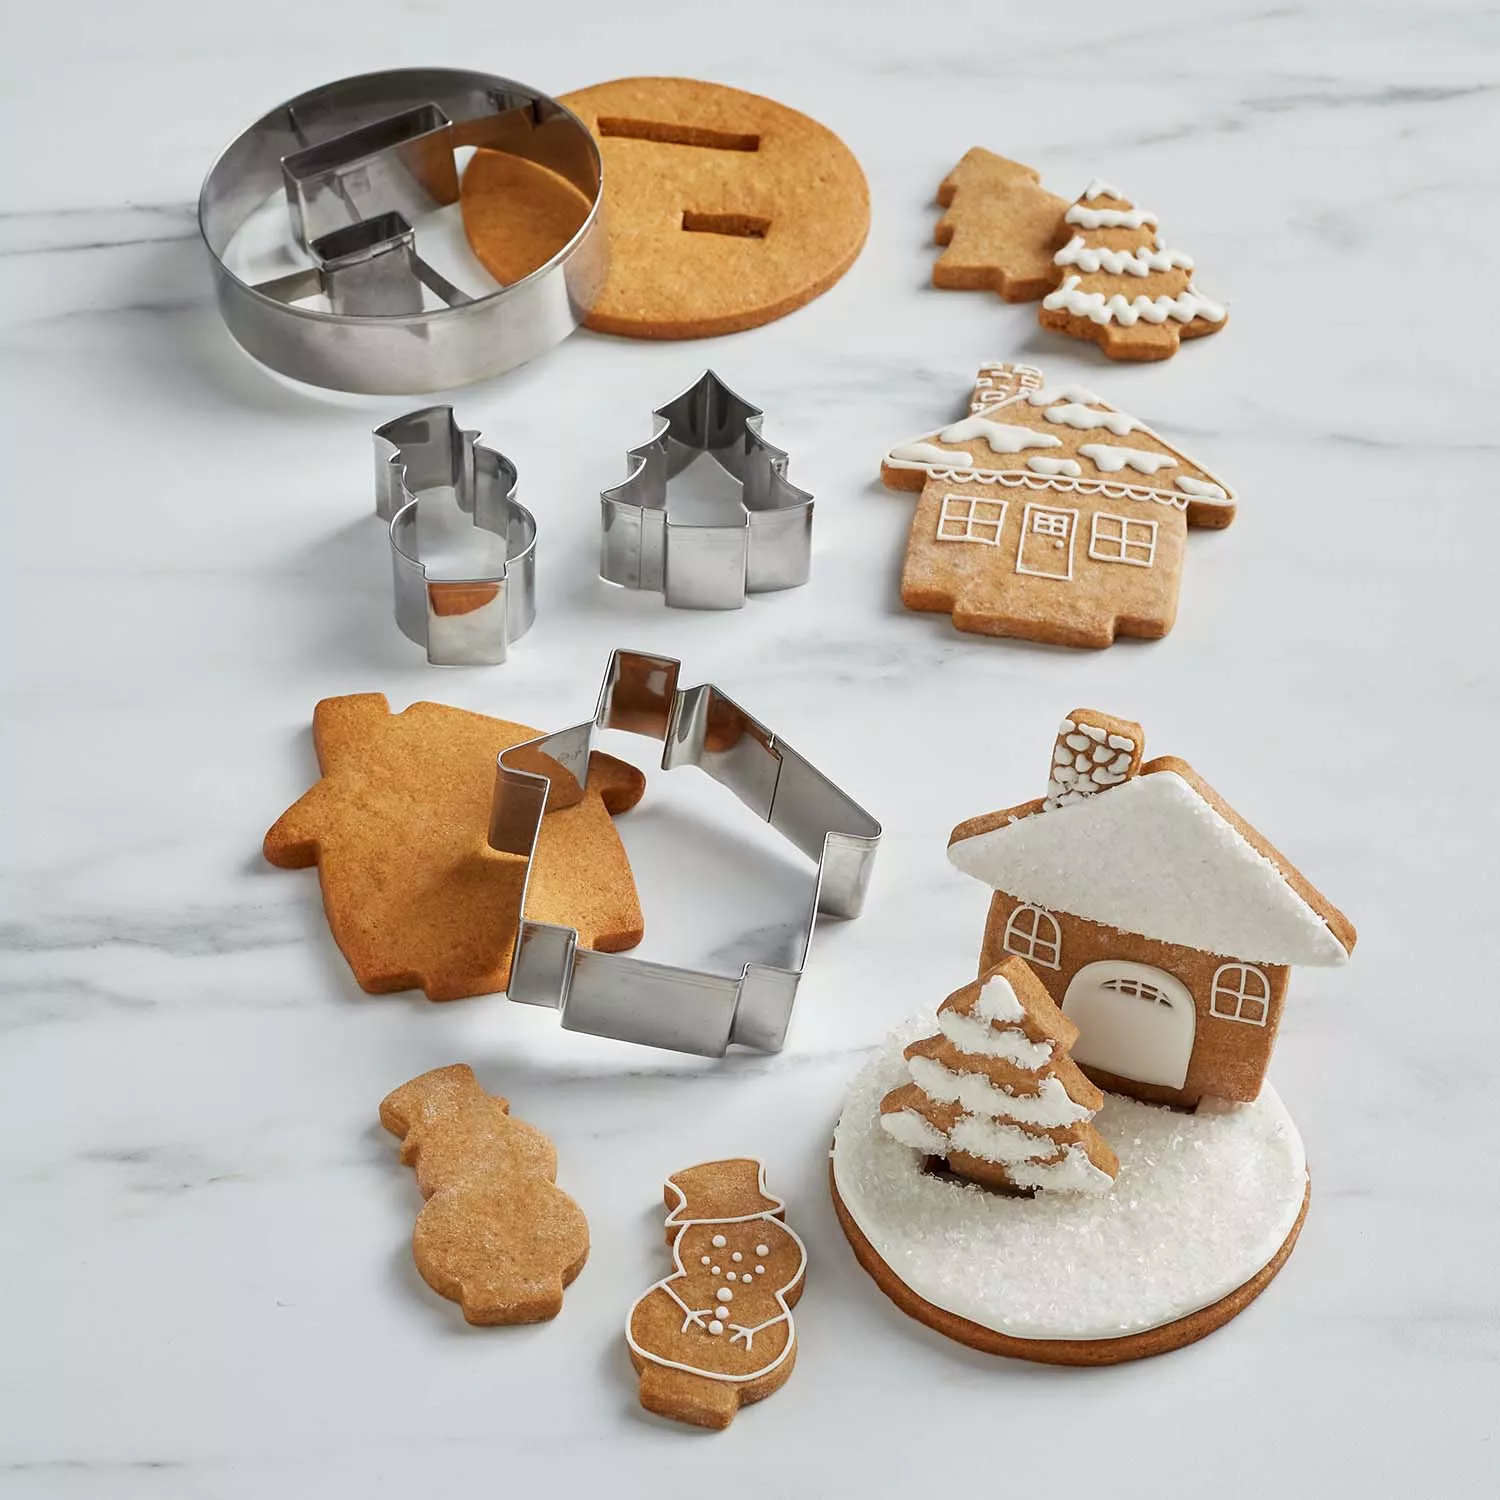 3D Gingerbread Pickup Truck Cookie Cutter Set